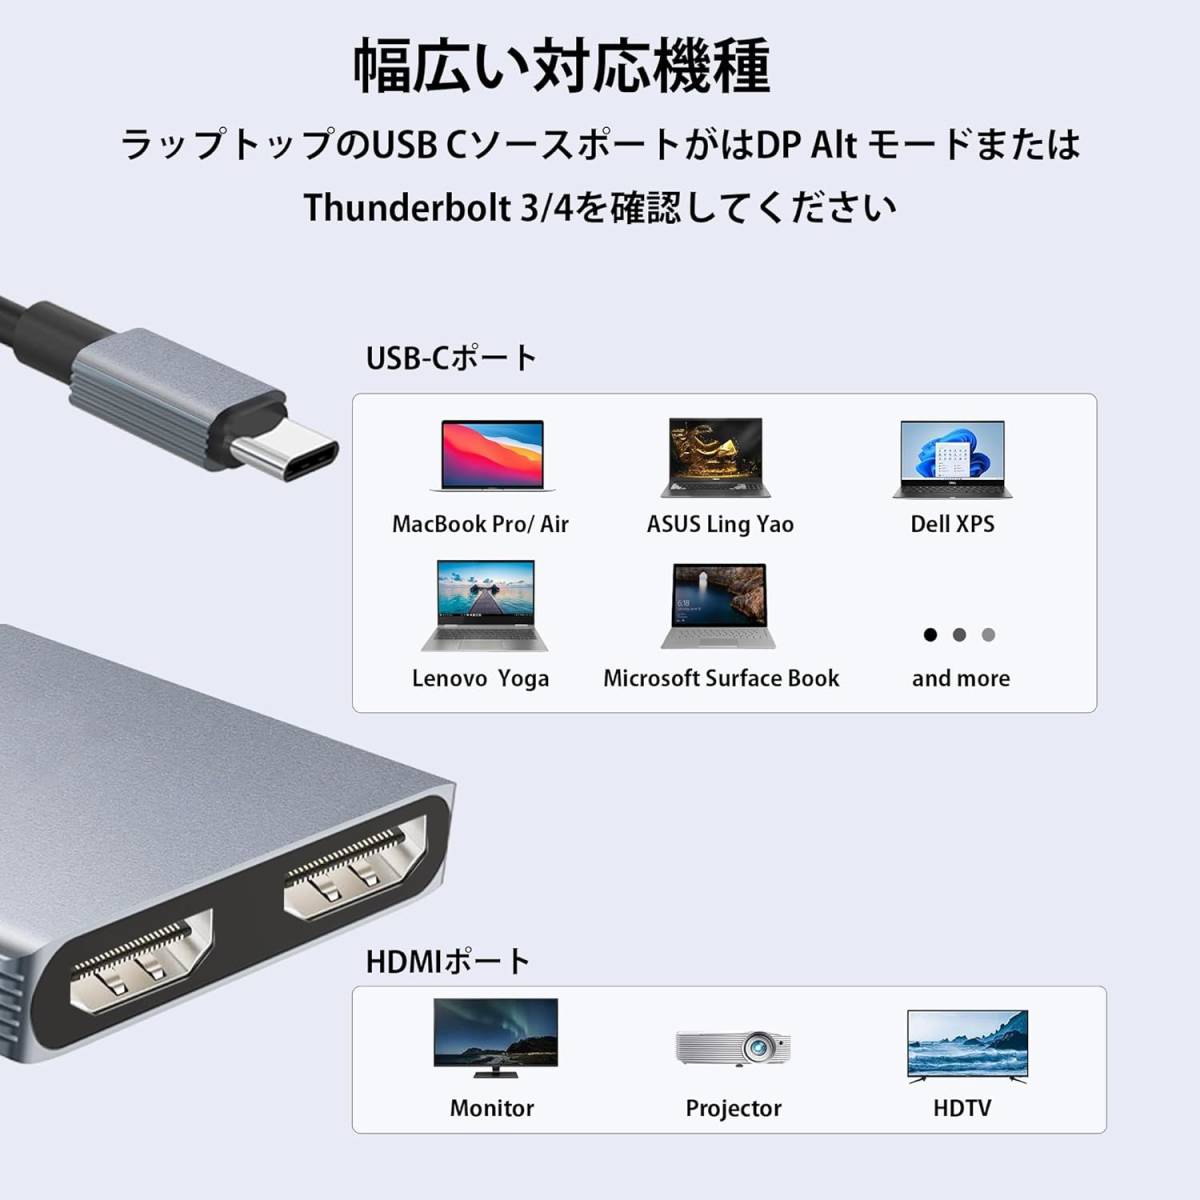 送料無料★USB C HDMI 変換アダプター Aibilangose デュアル HDMI Type-C マルチディスプレイアダプタ 3画面 拡張/複製 4K映像出力_画像3